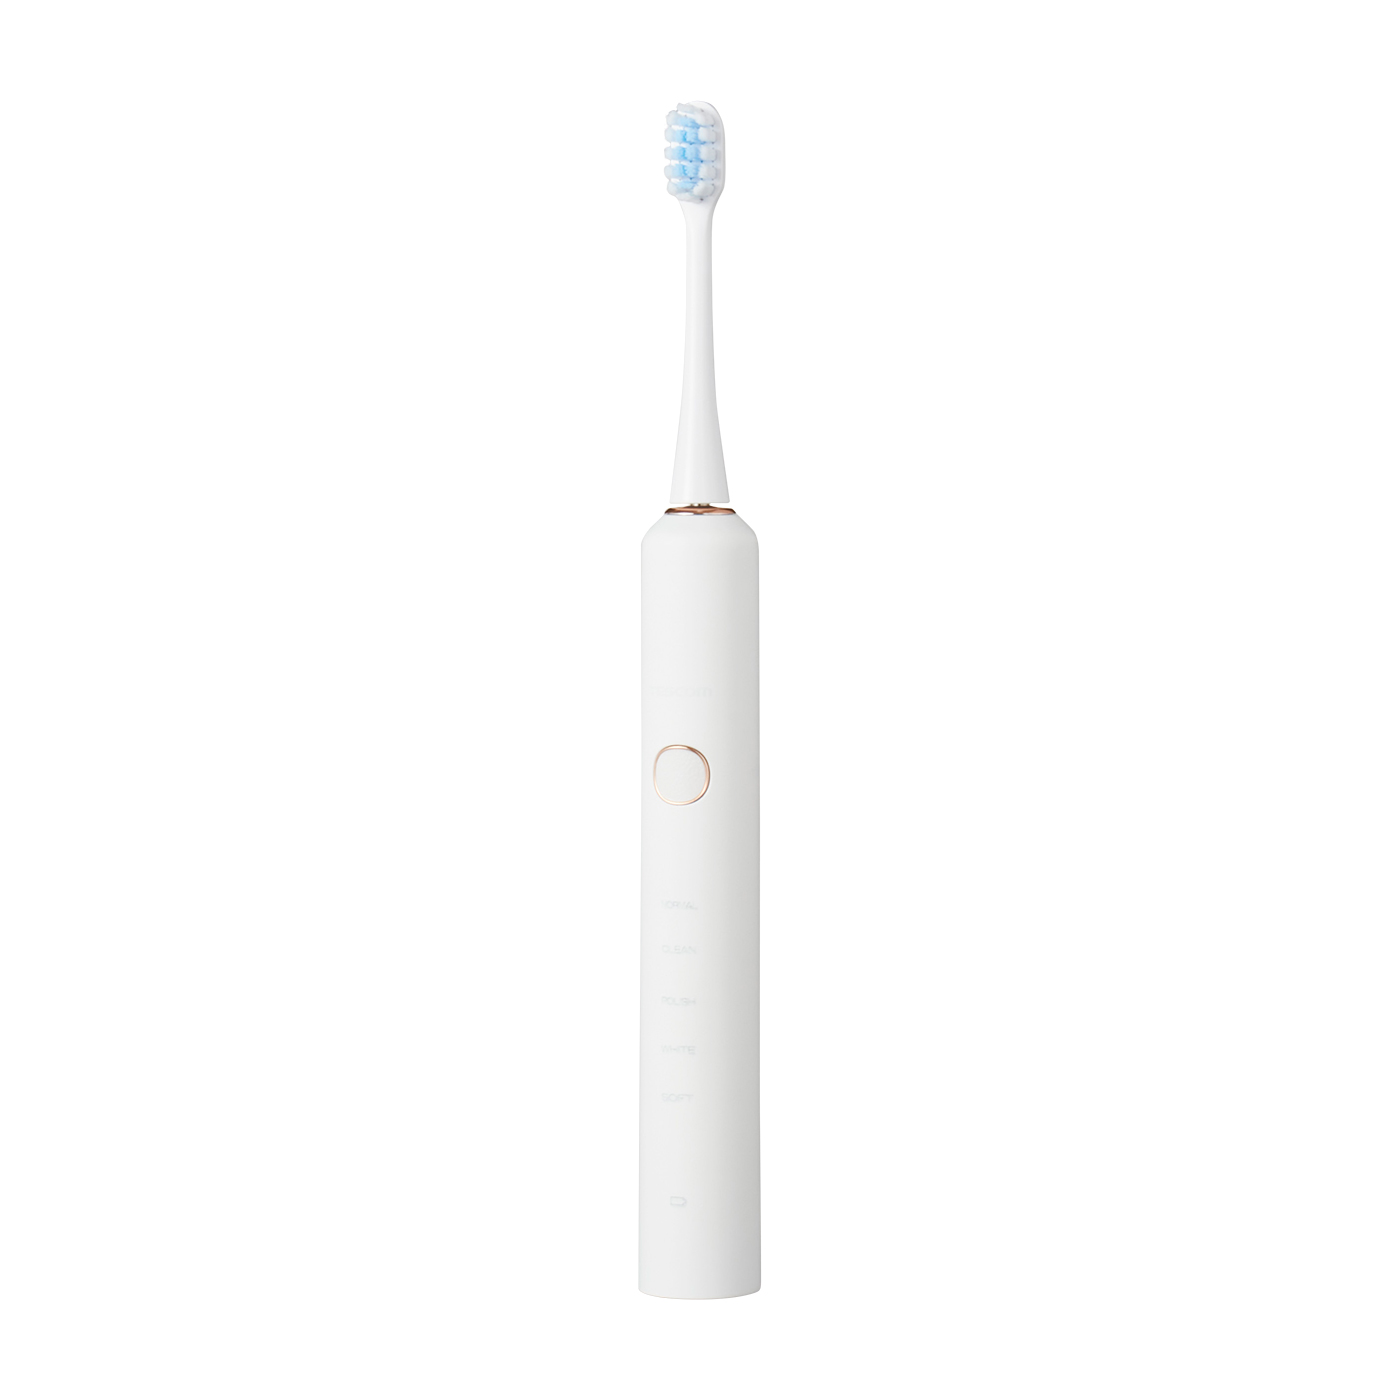 電動歯ブラシ 音波歯ブラシ 携帯歯ブラシ 38000回転 分 替えブラシ2本